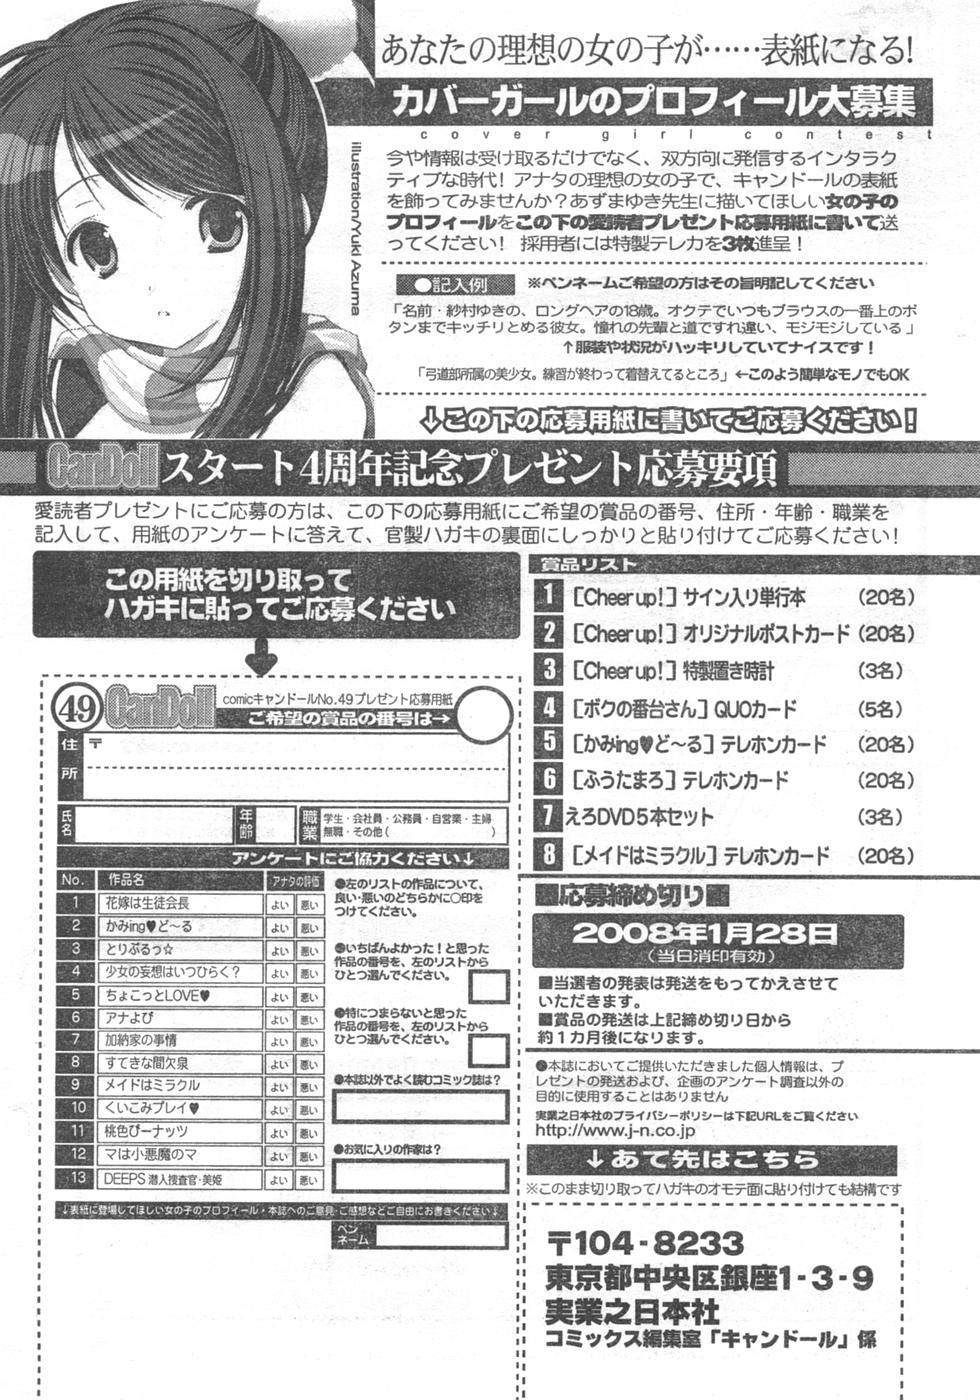 COMIC キャンドール 2008年2月号 Vol.49